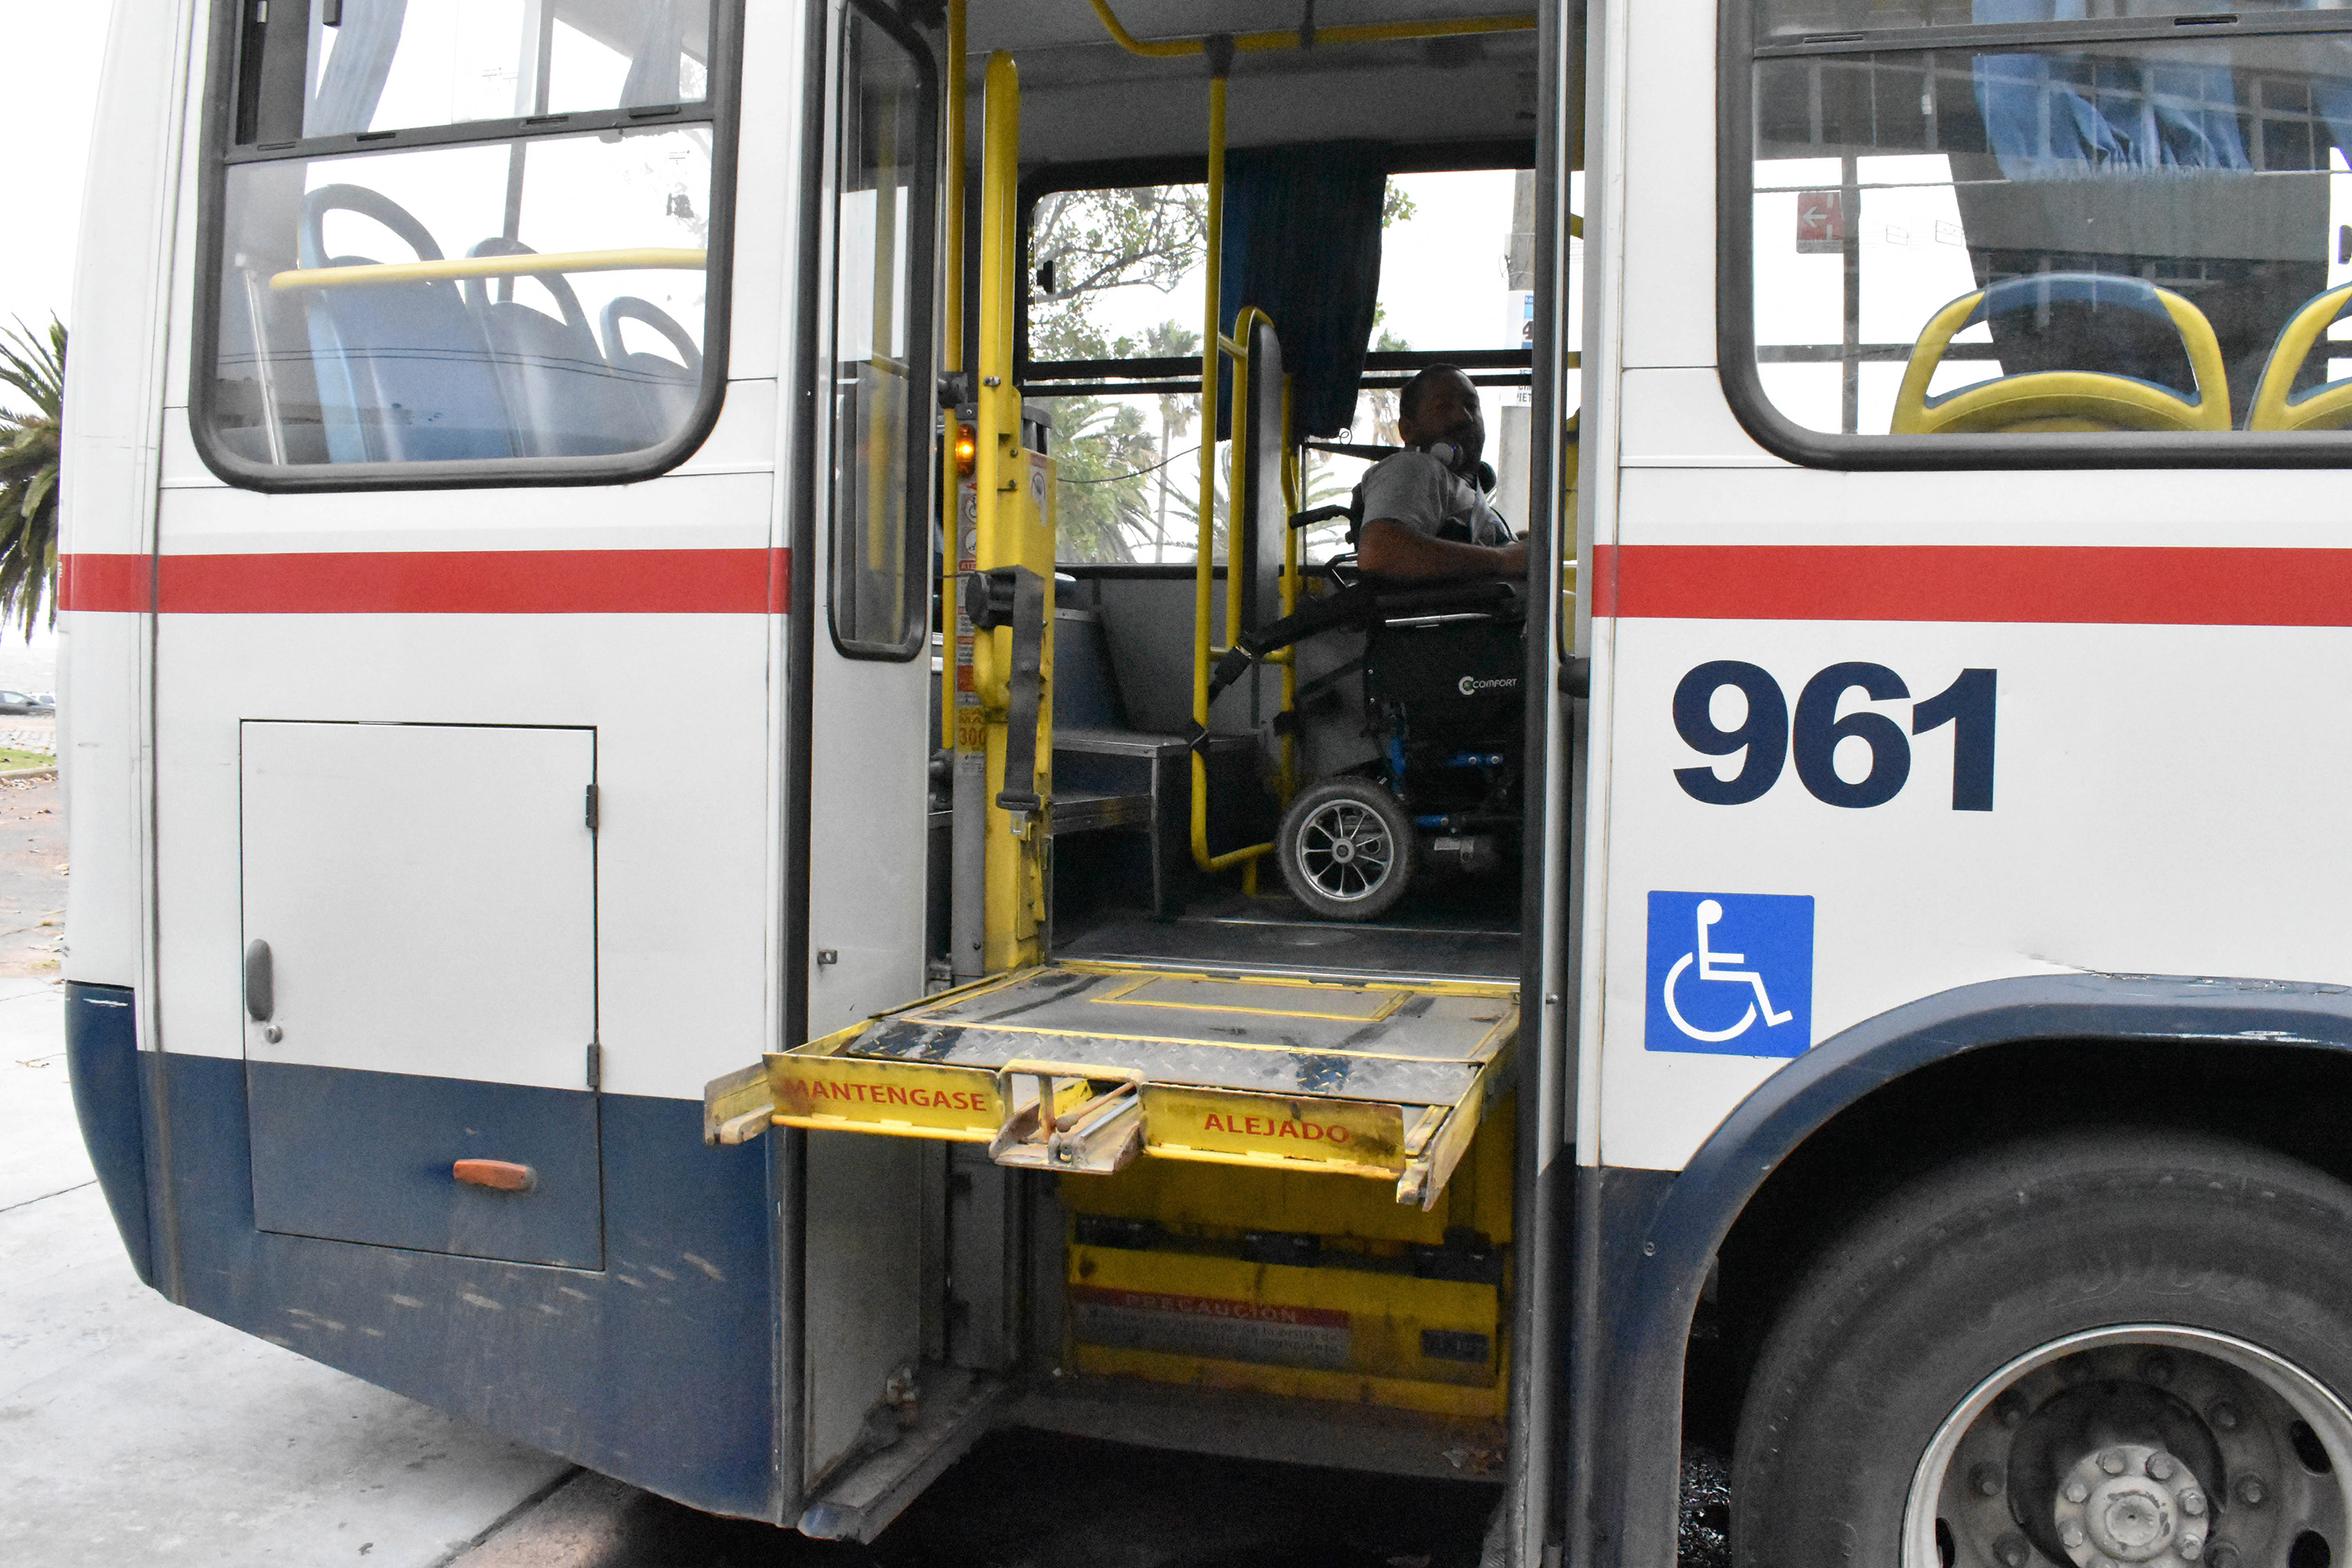 Inspección a ómnibus de transporte público